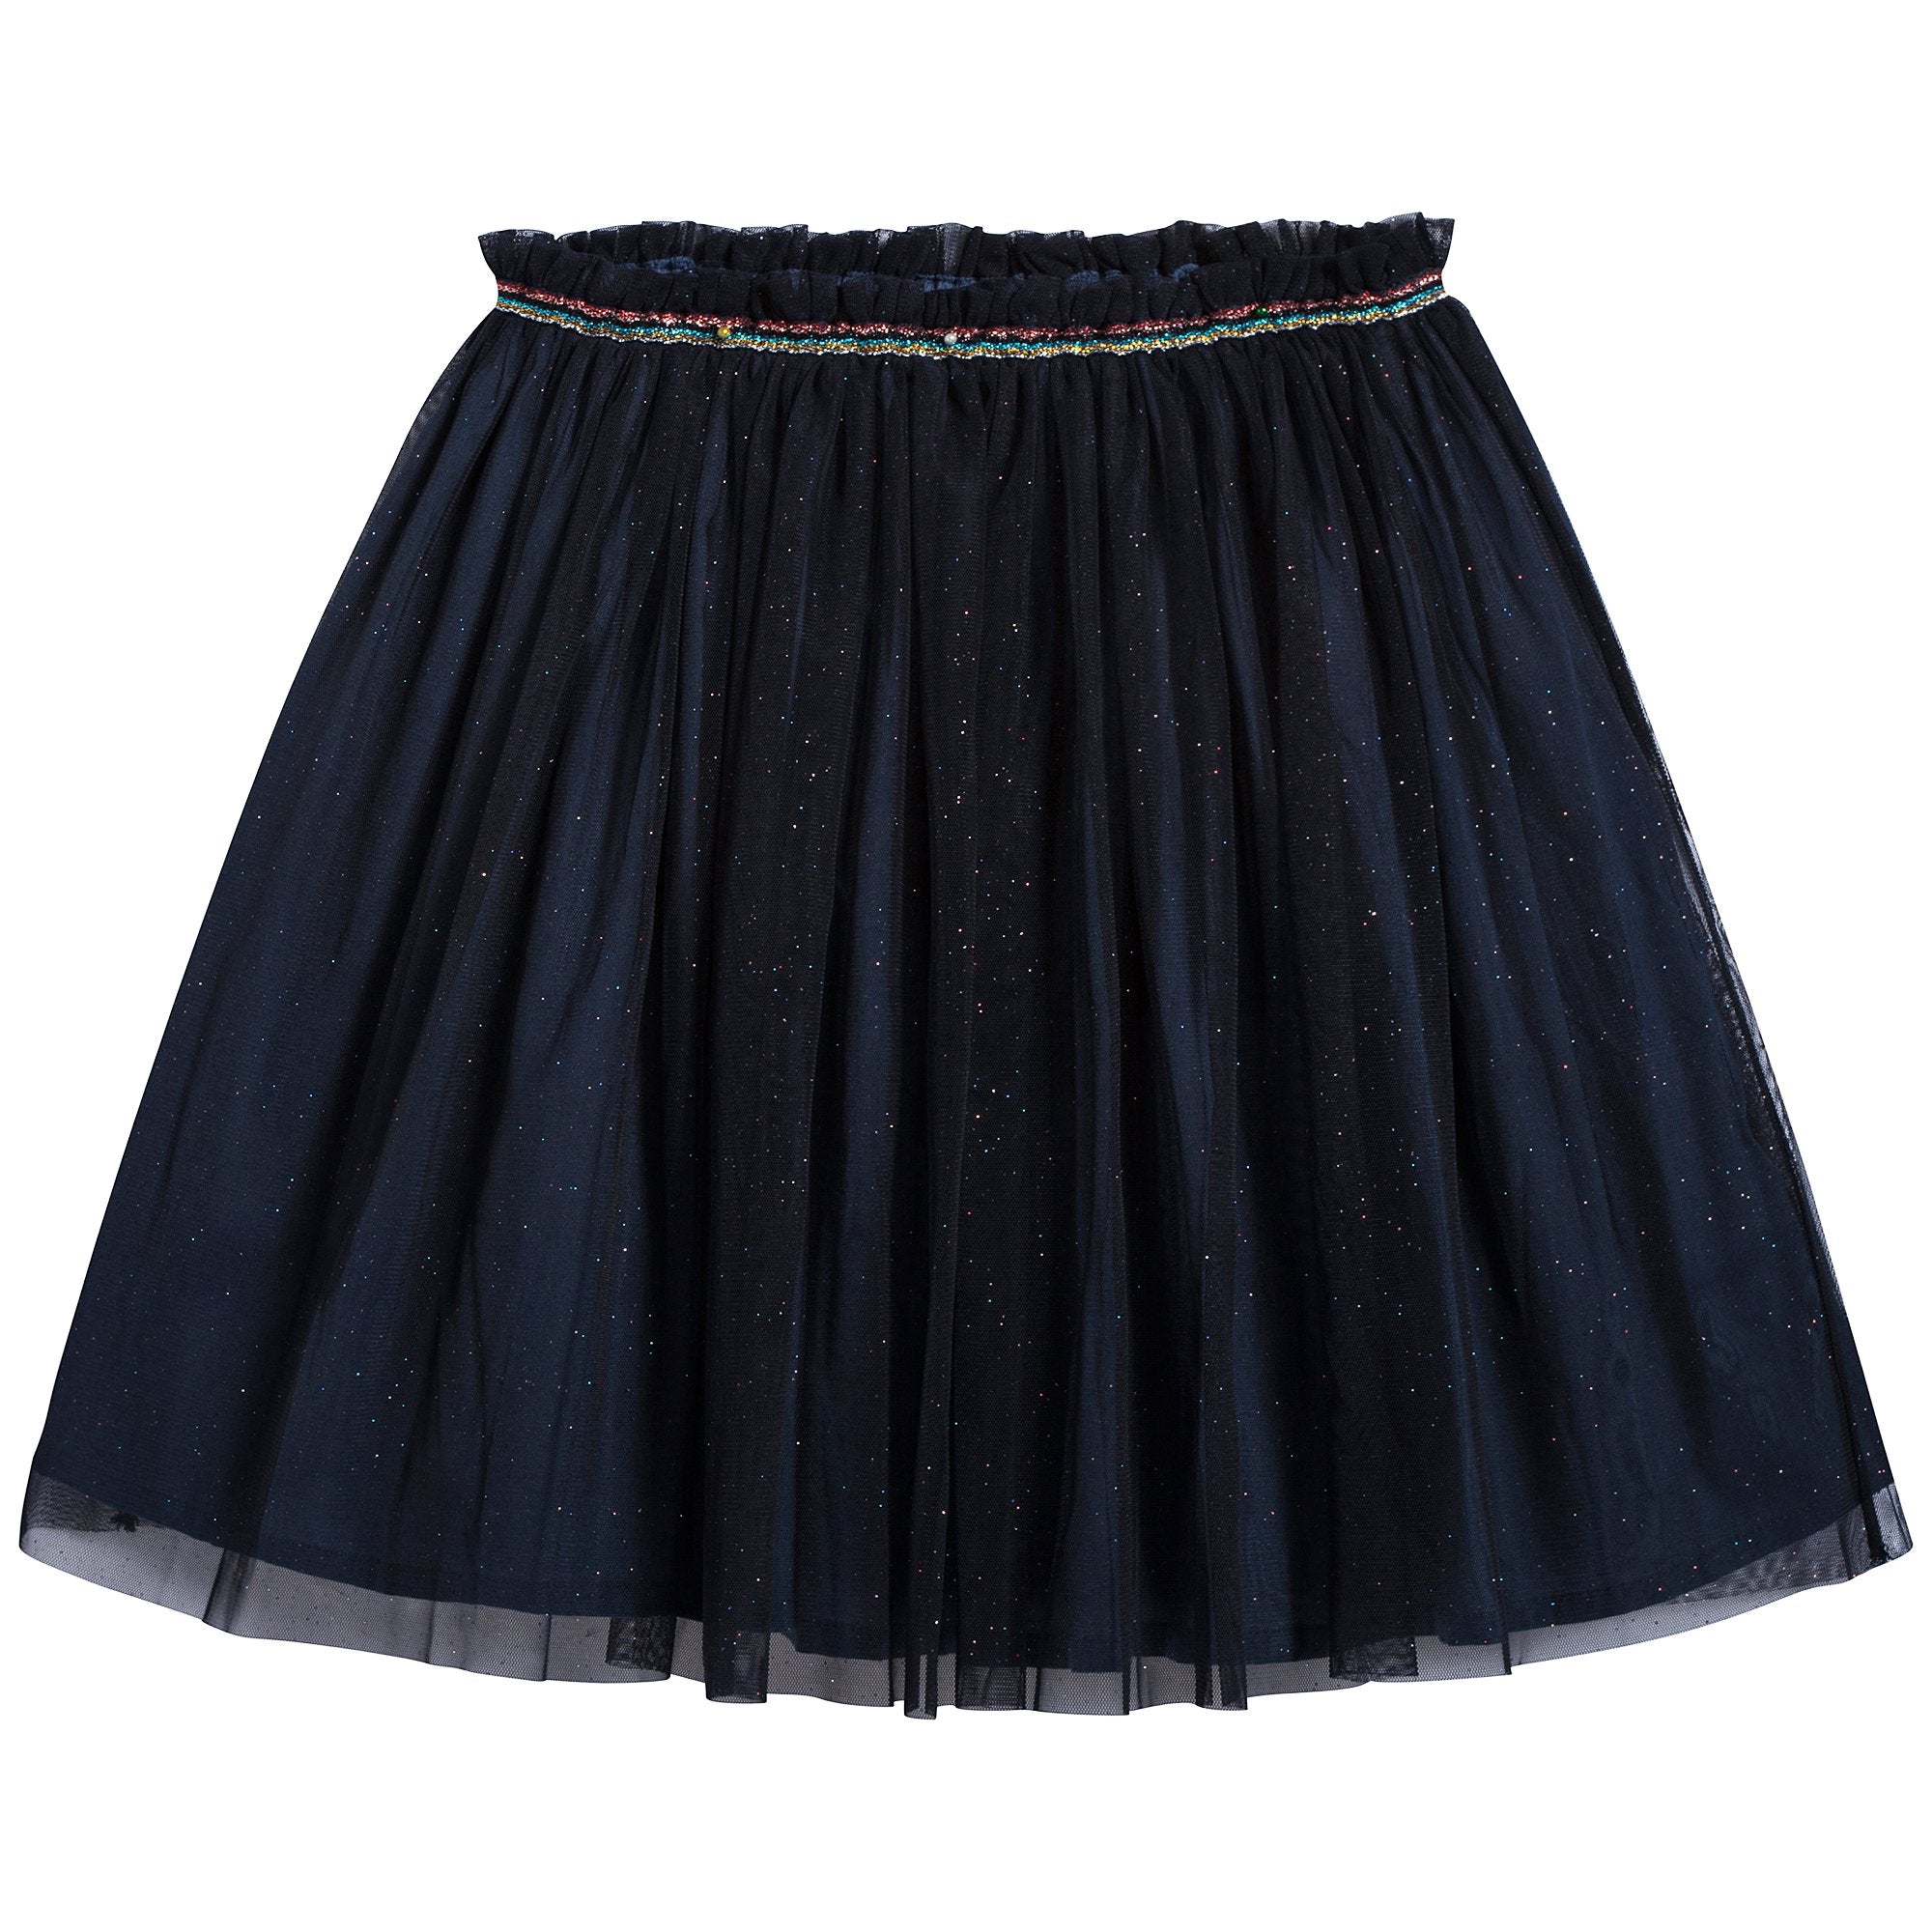 Girls Black Skirt